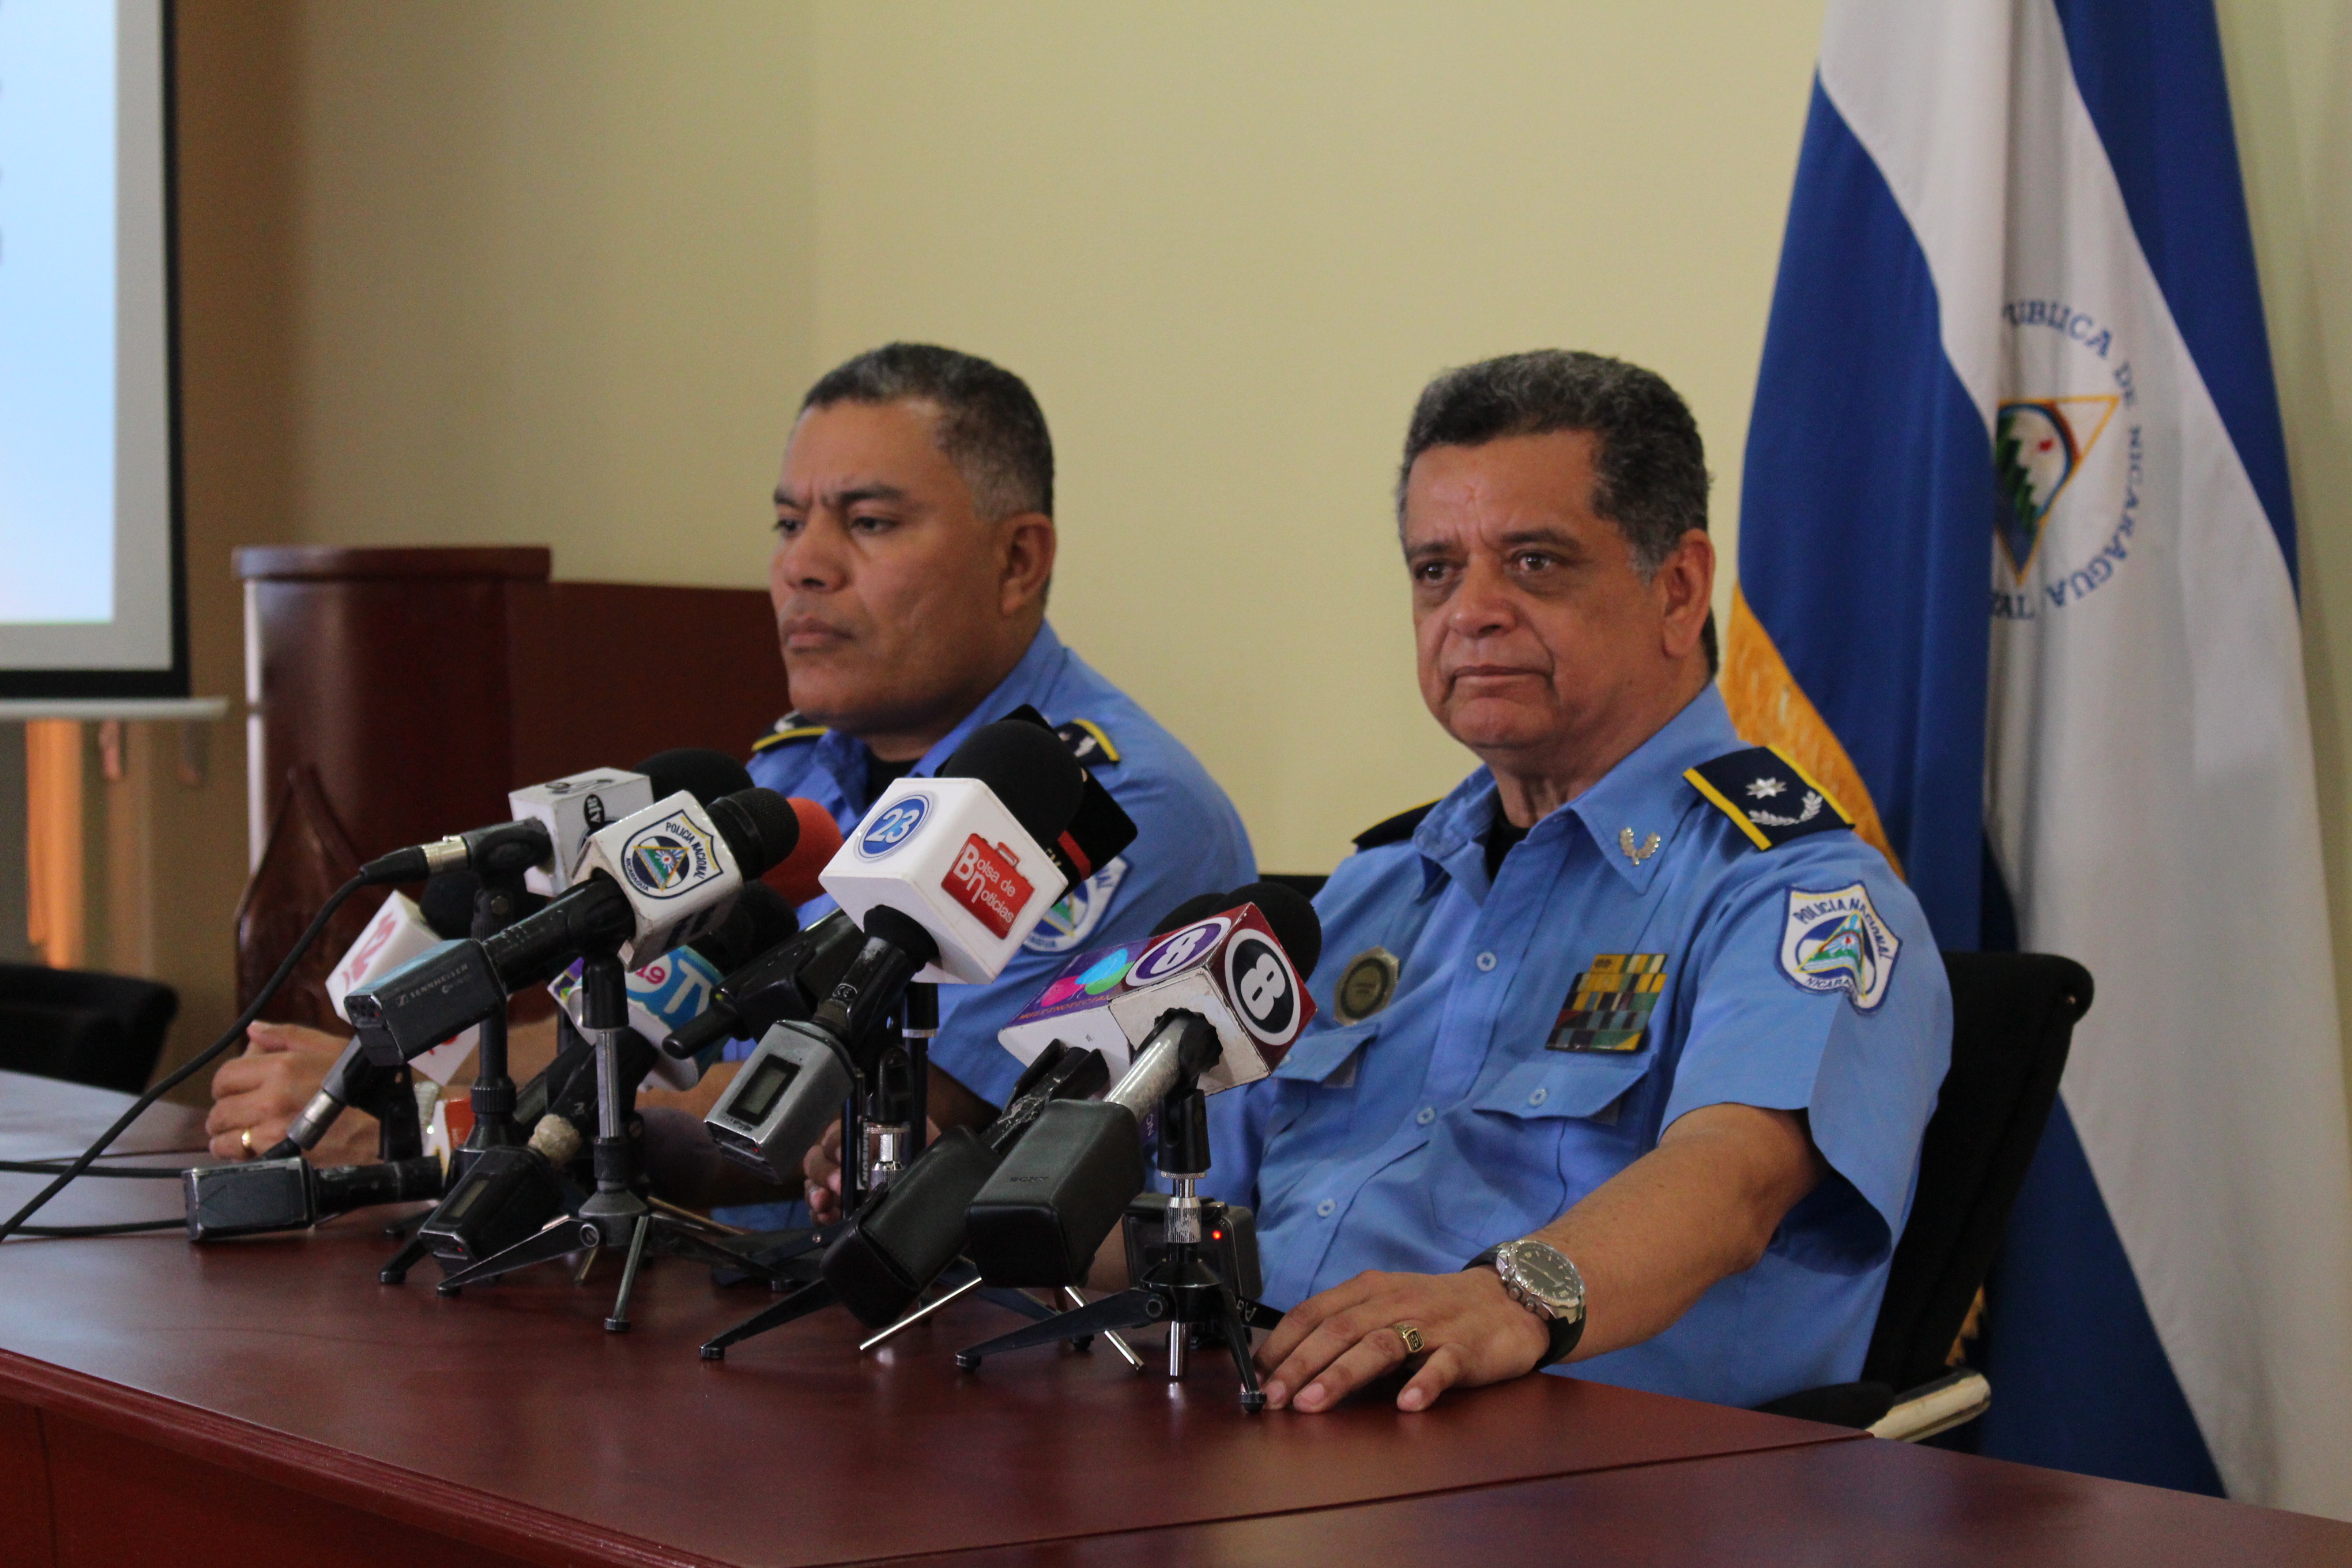 El comisionado general Francisco Díaz, sub director de la Policía Nacional. Fotografía: Abixael MG/Artículo66